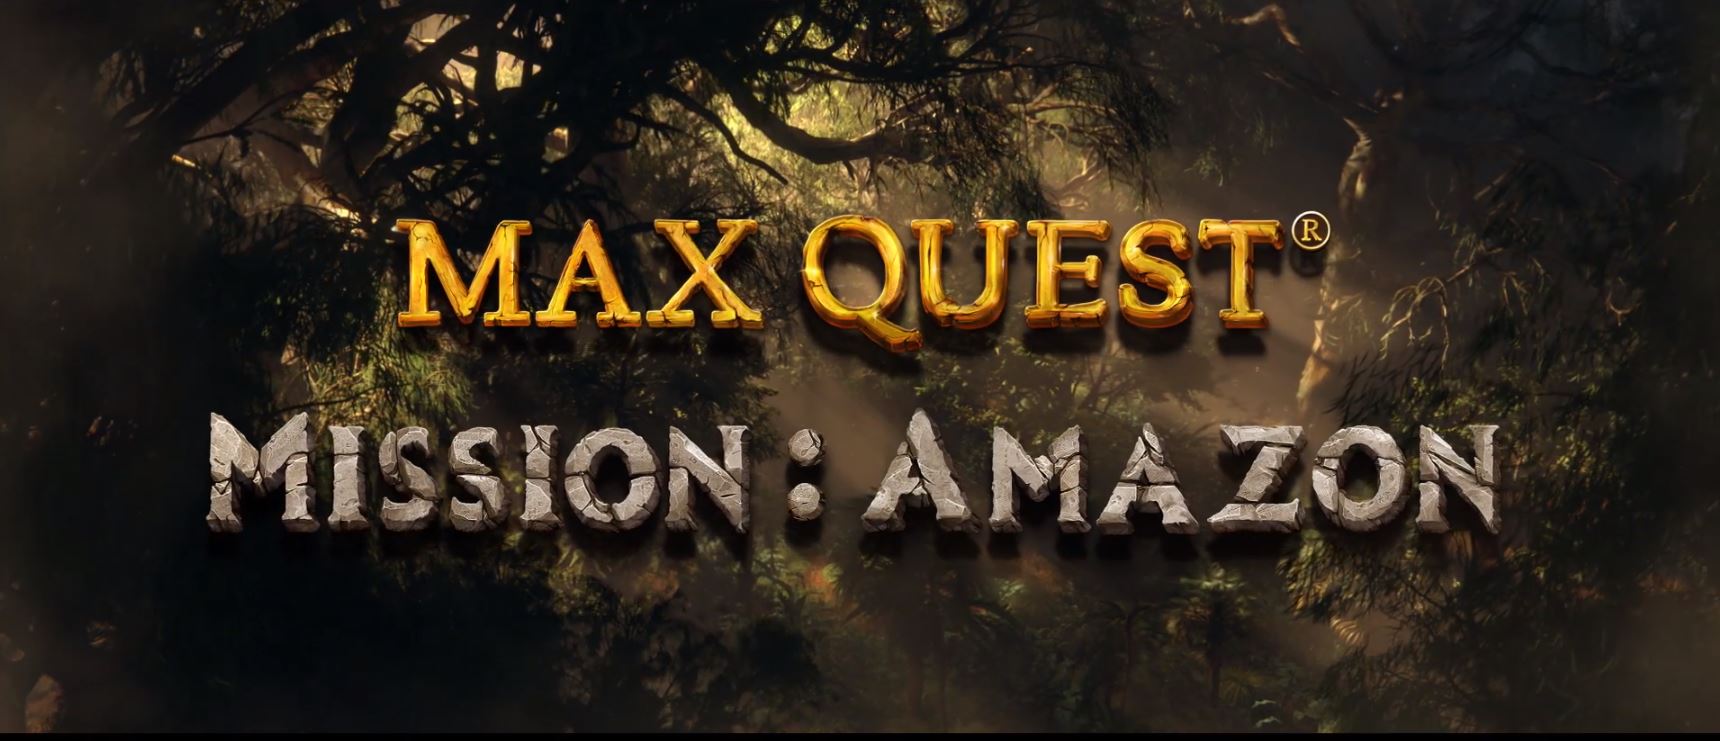 Max Quest Mission Amazon